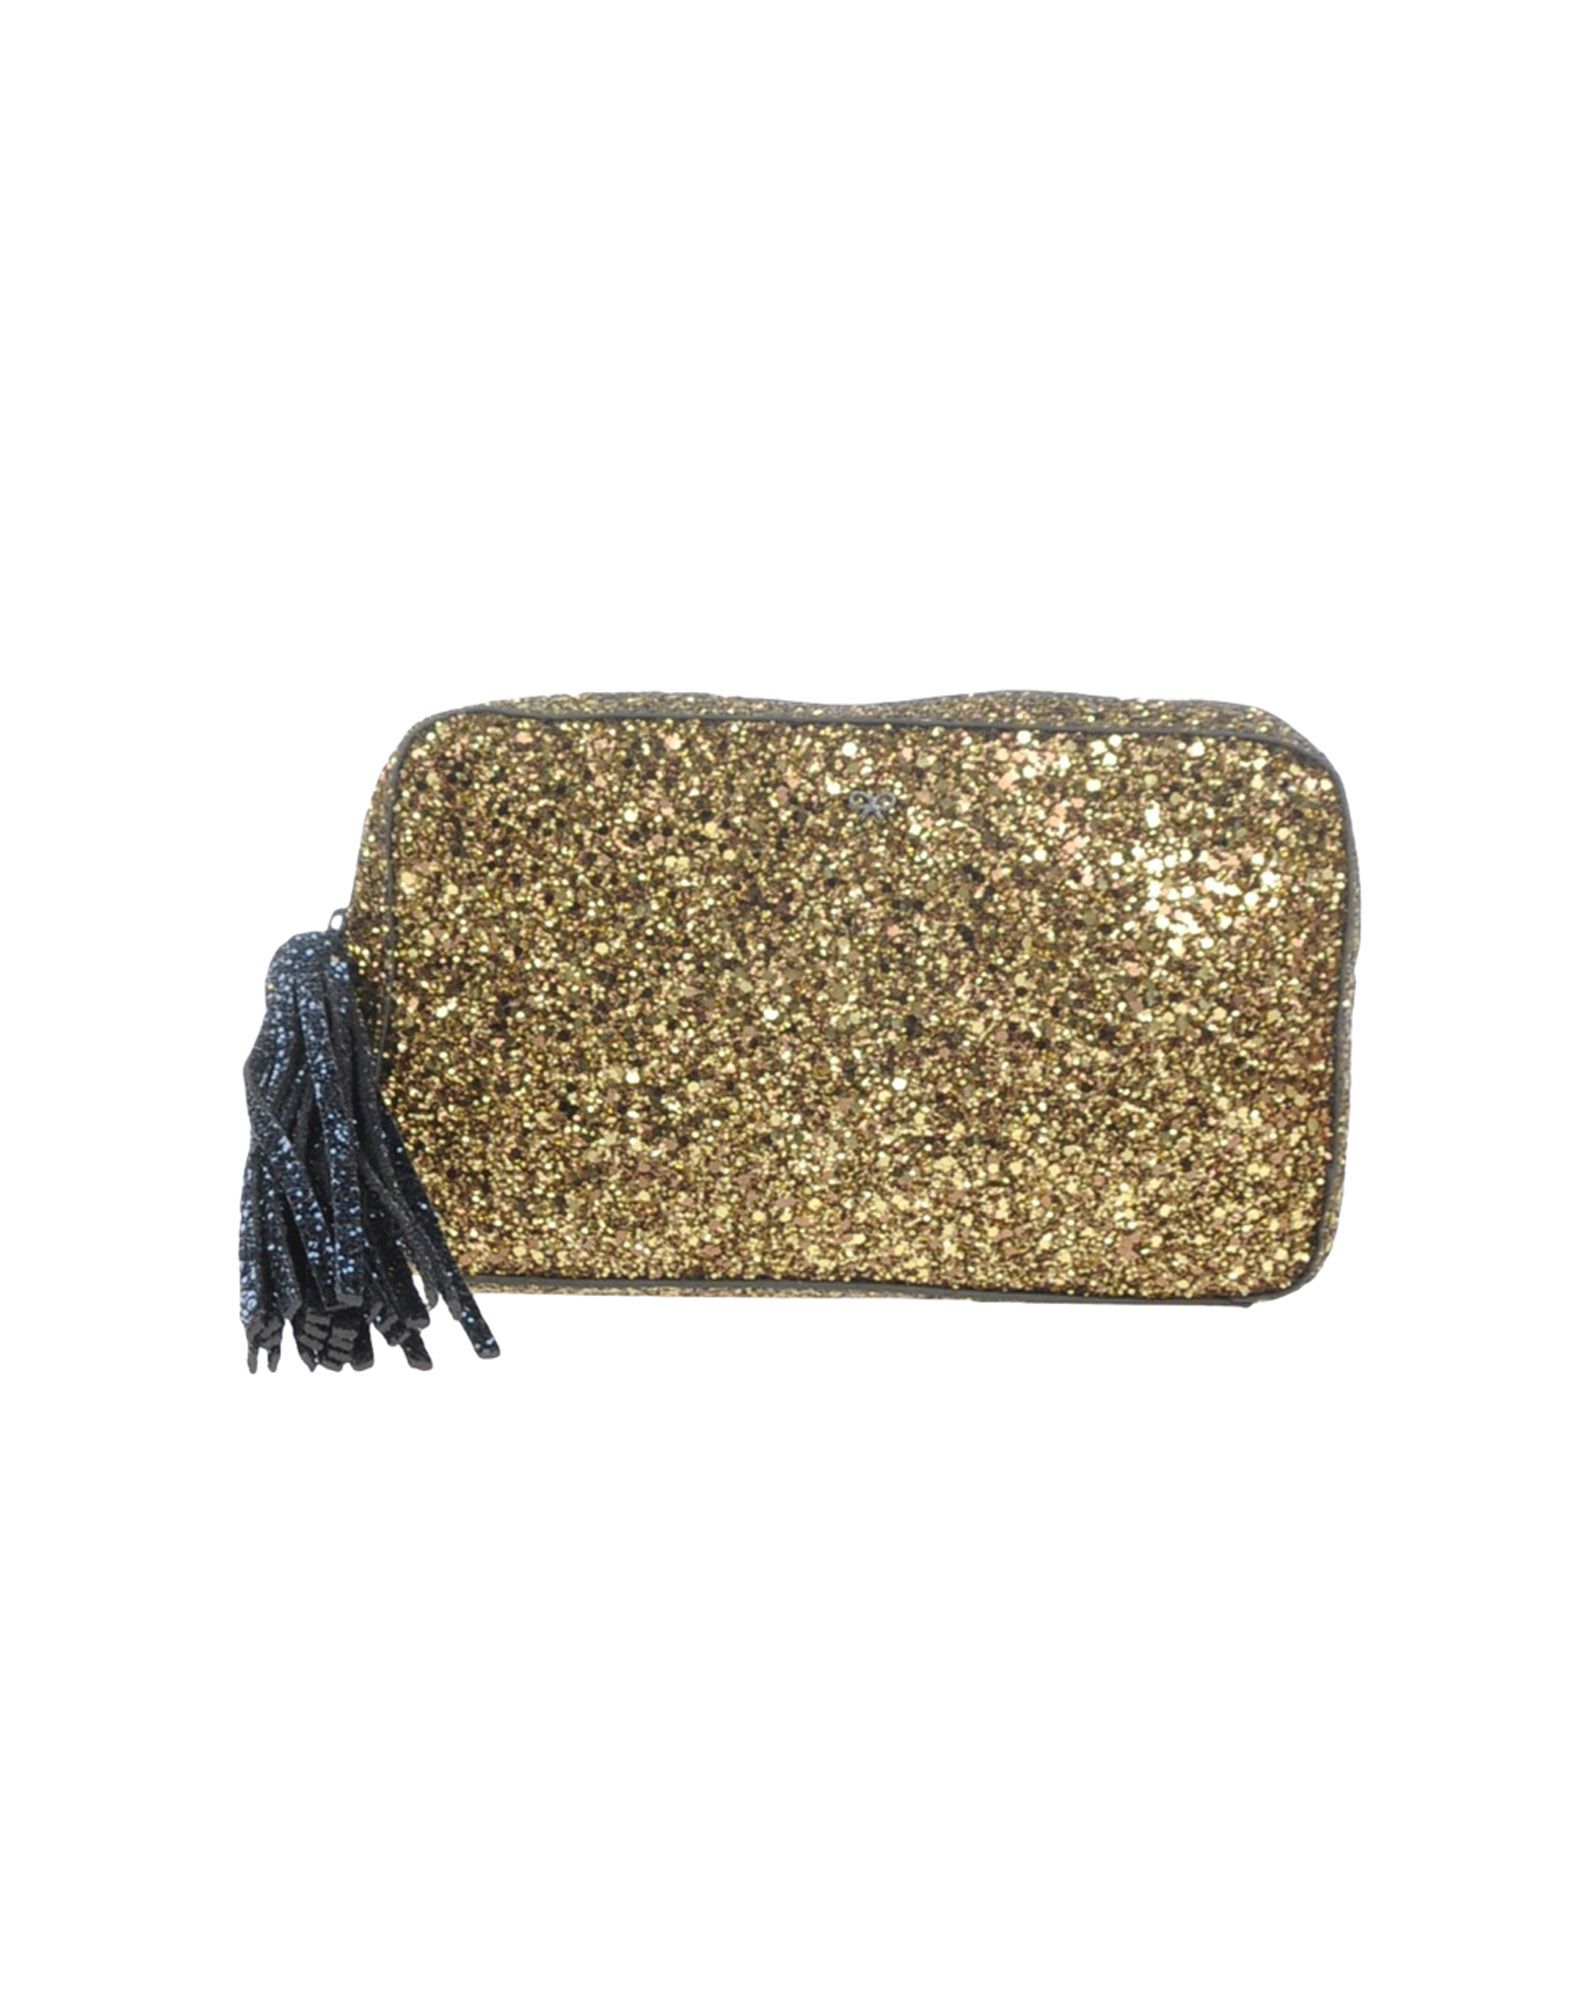 Anya Hindmarch Handbag in Gold (Metallic) - Lyst